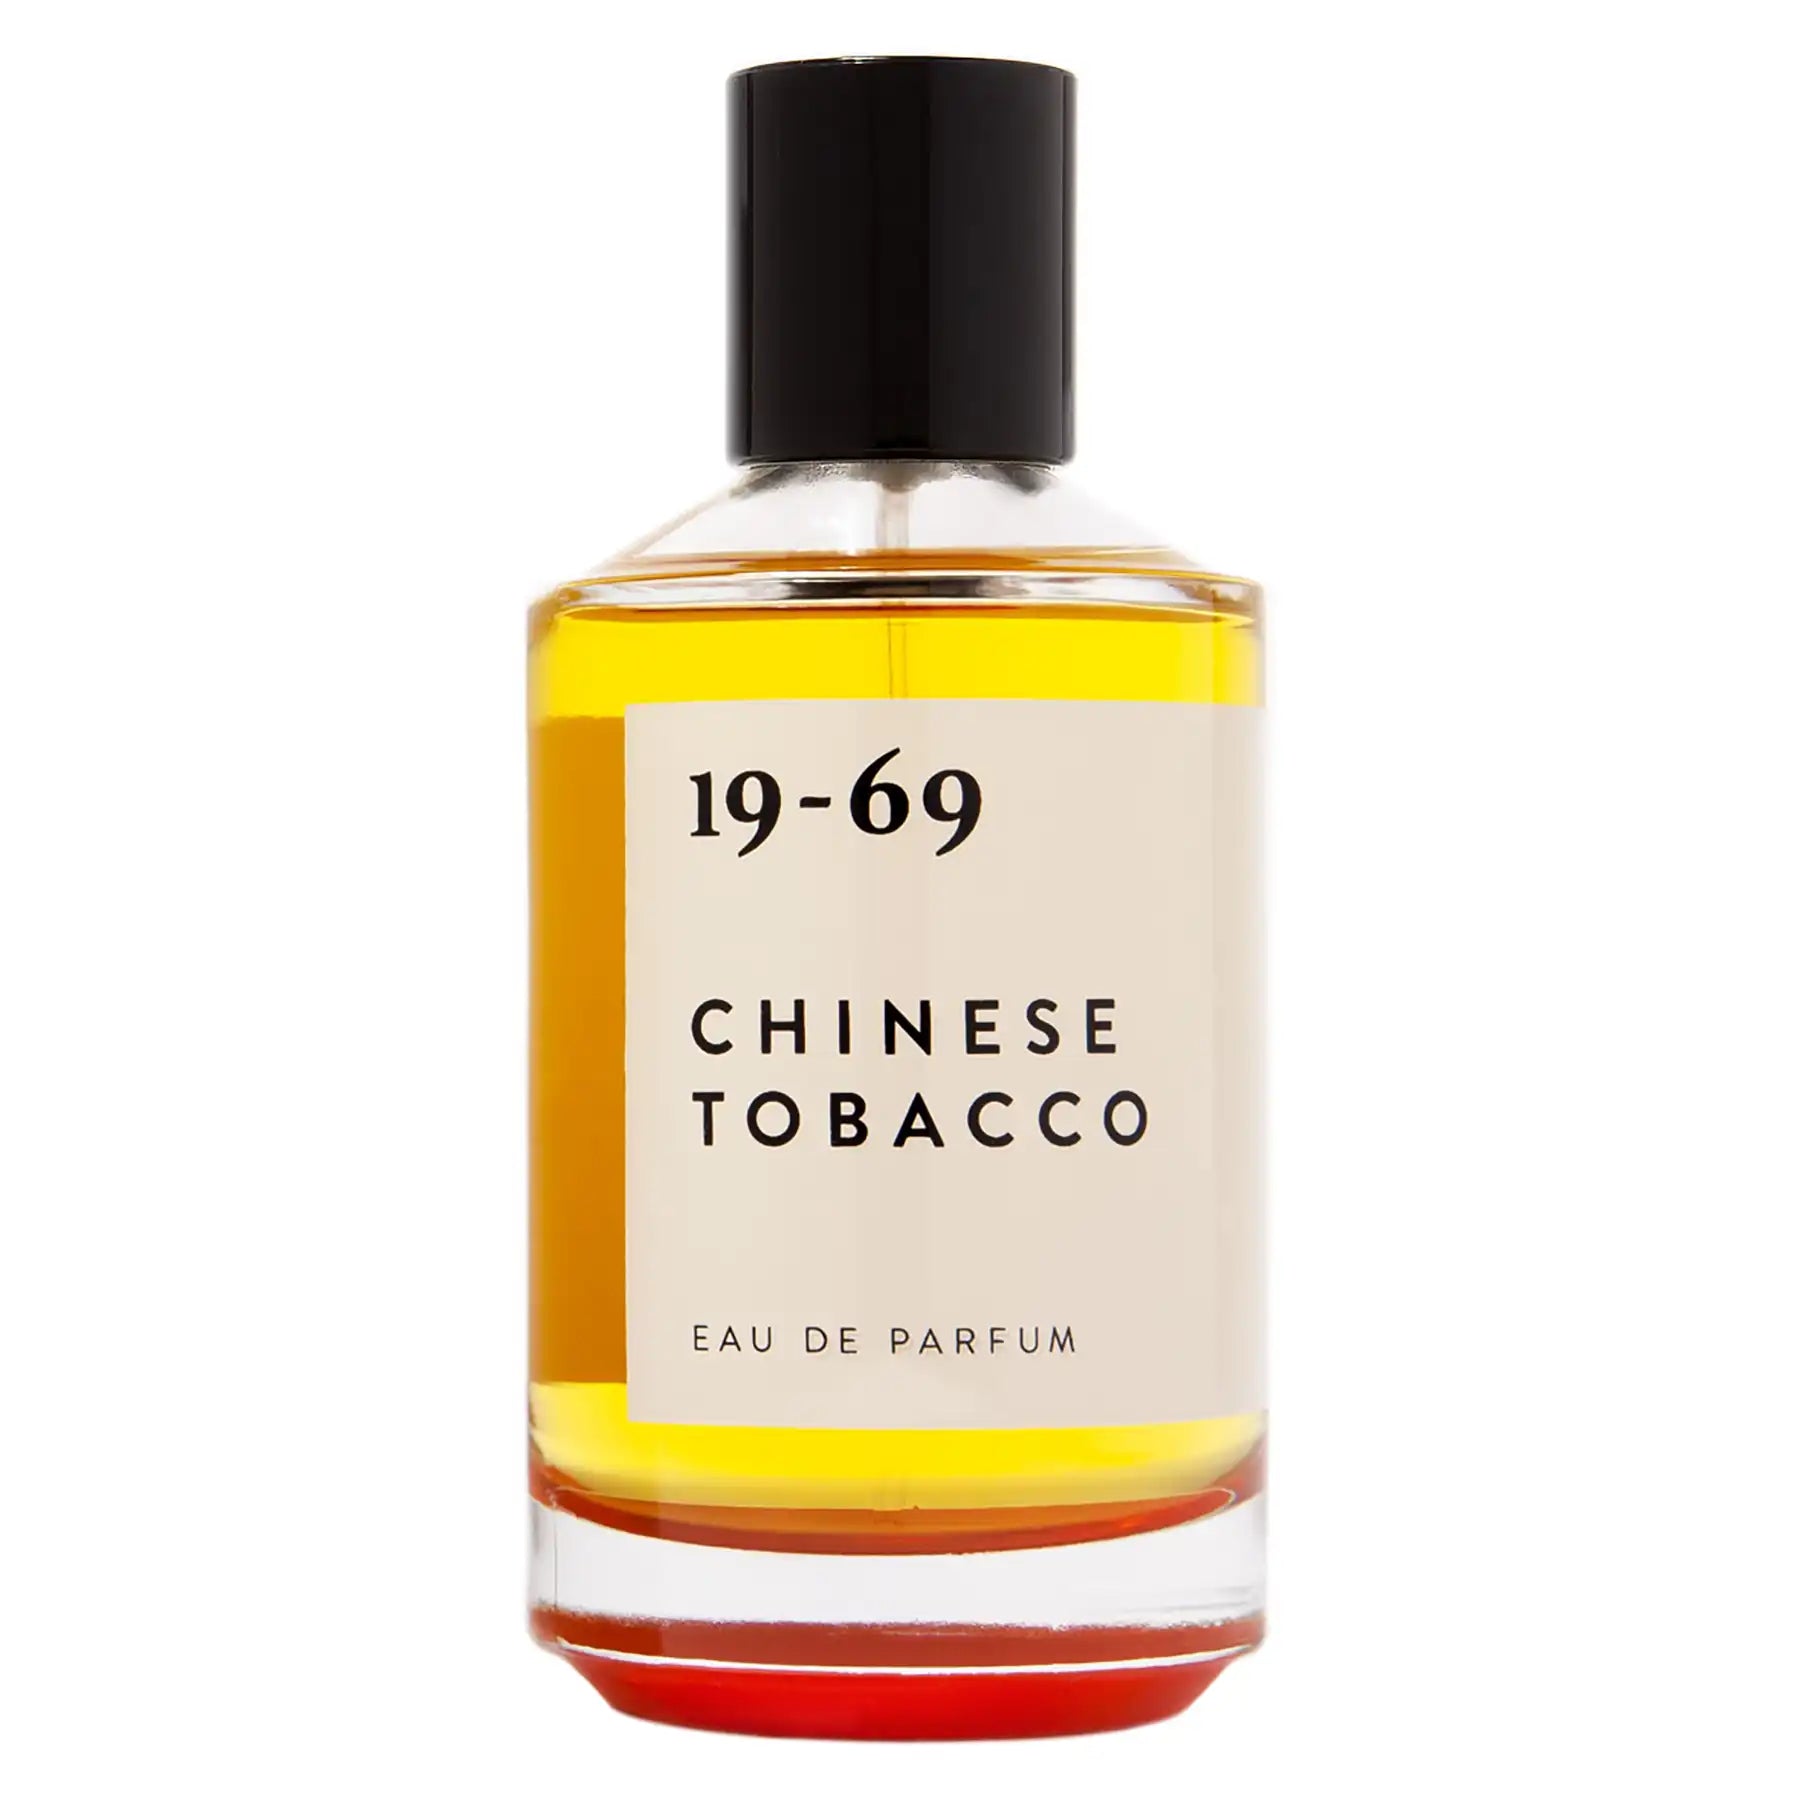 19-69 Chinese Tobacco Eau de Parfum